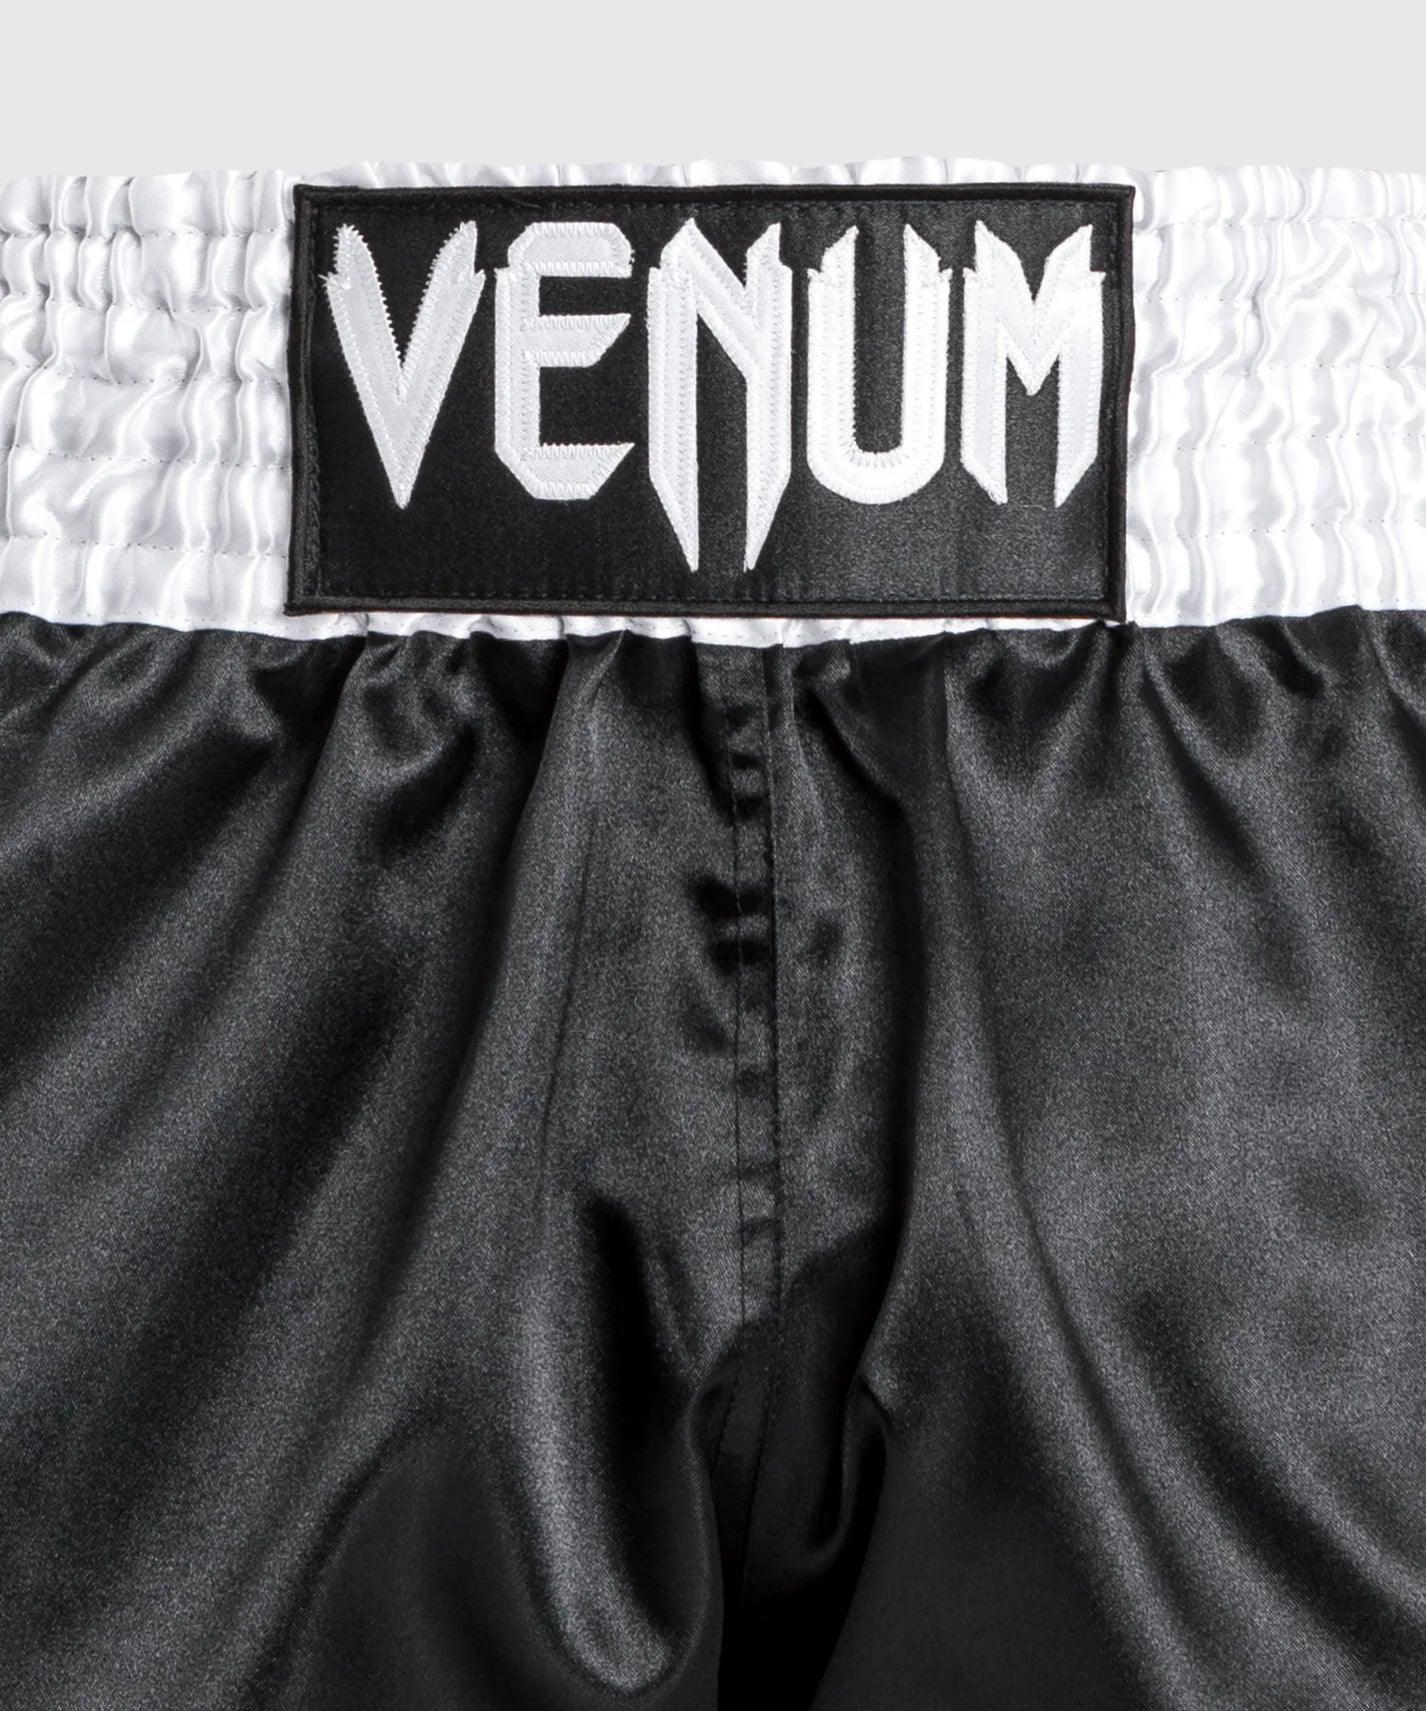 Venum Classic Short Muay Thai - Vert/Or/Noir